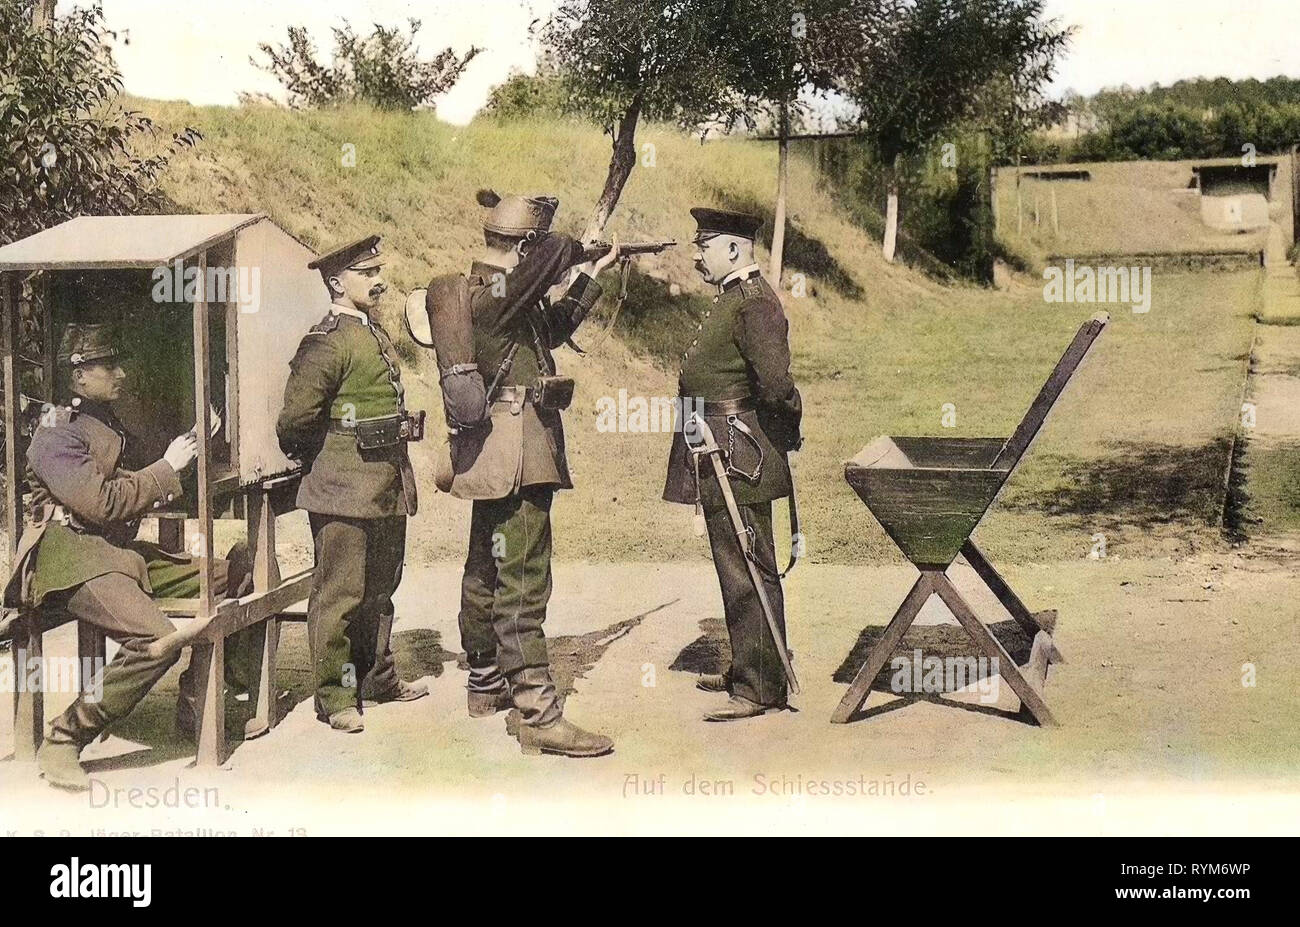 Shooting ranges in Germany, Use of weapons, 2. Königlich Sächsisches Jäger-Bataillon Nr. 13, 1903, Dresden, 2. Königlich Sächsisches Jäger, Batallion Nr. 13, Auf dem Schießstand Stock Photo